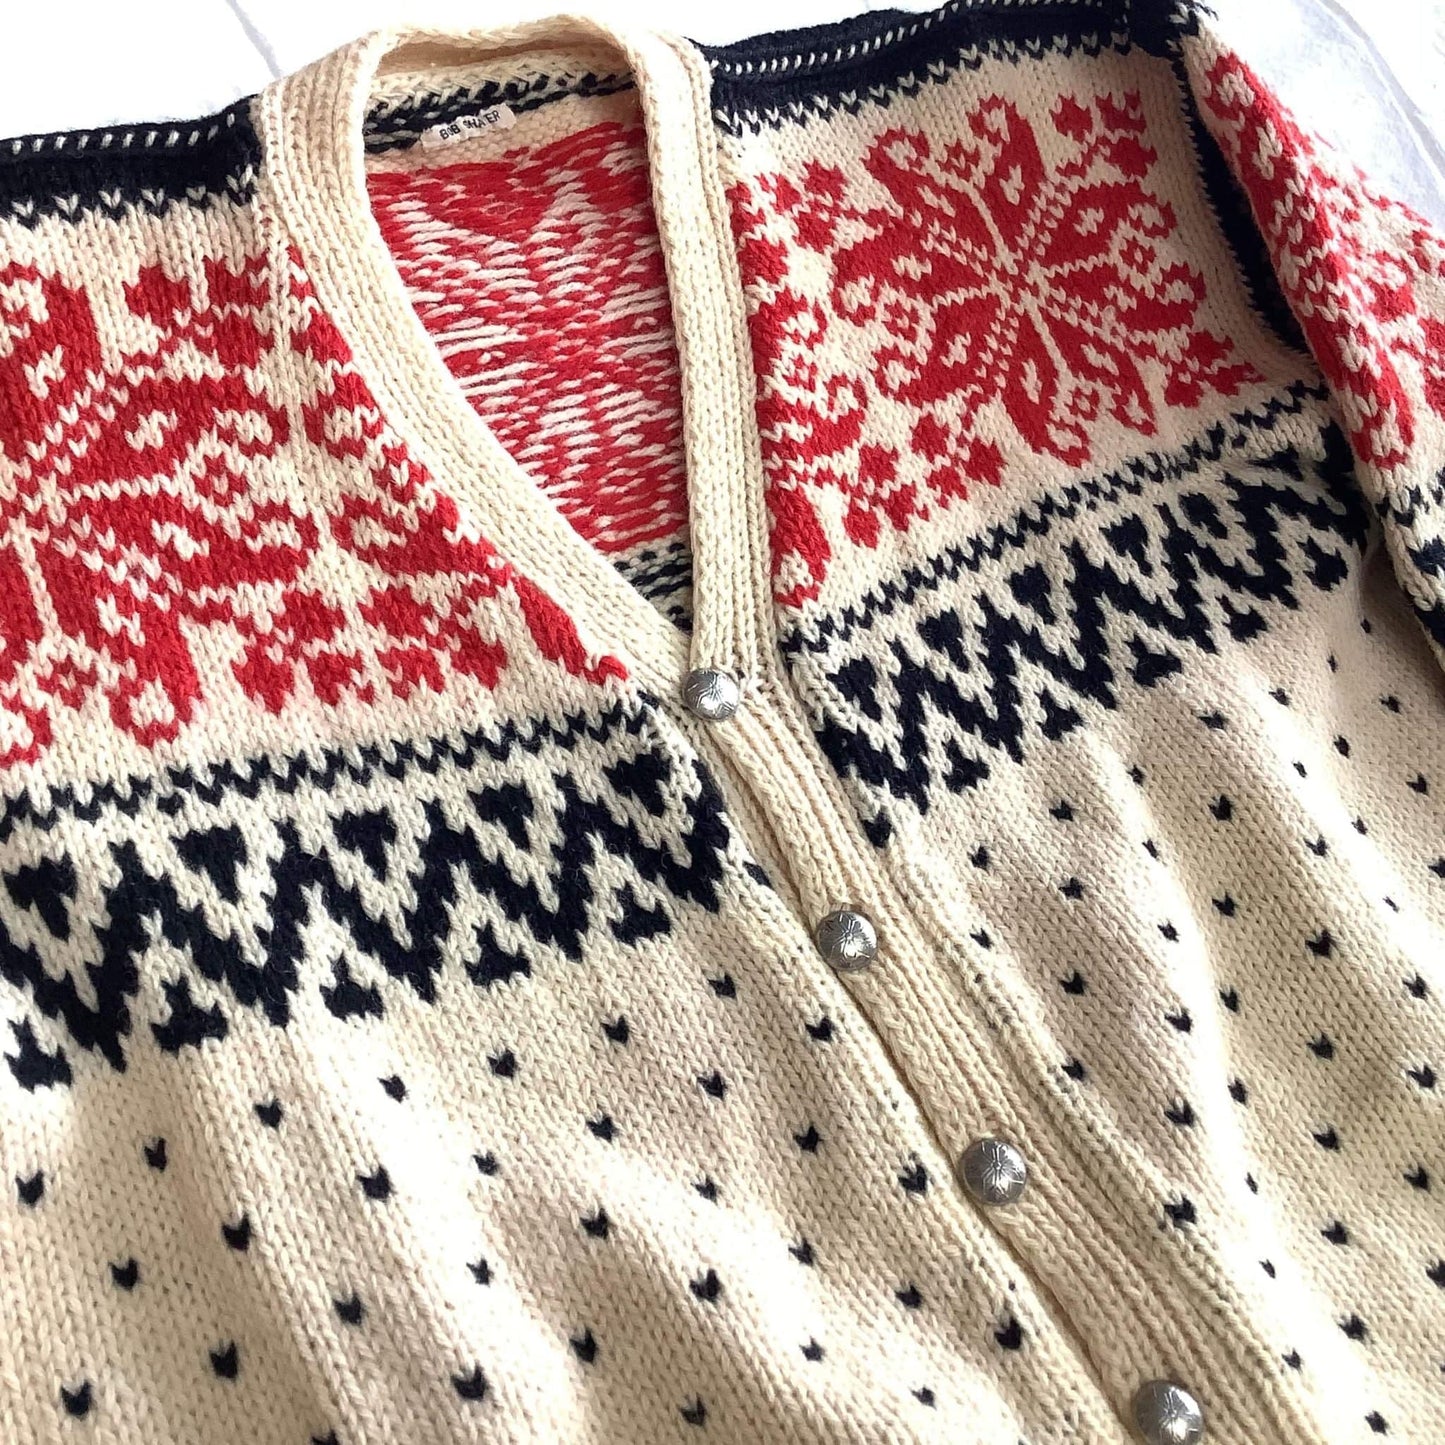 Fair Isle Sweater Small / Multi / Vintage 1950s